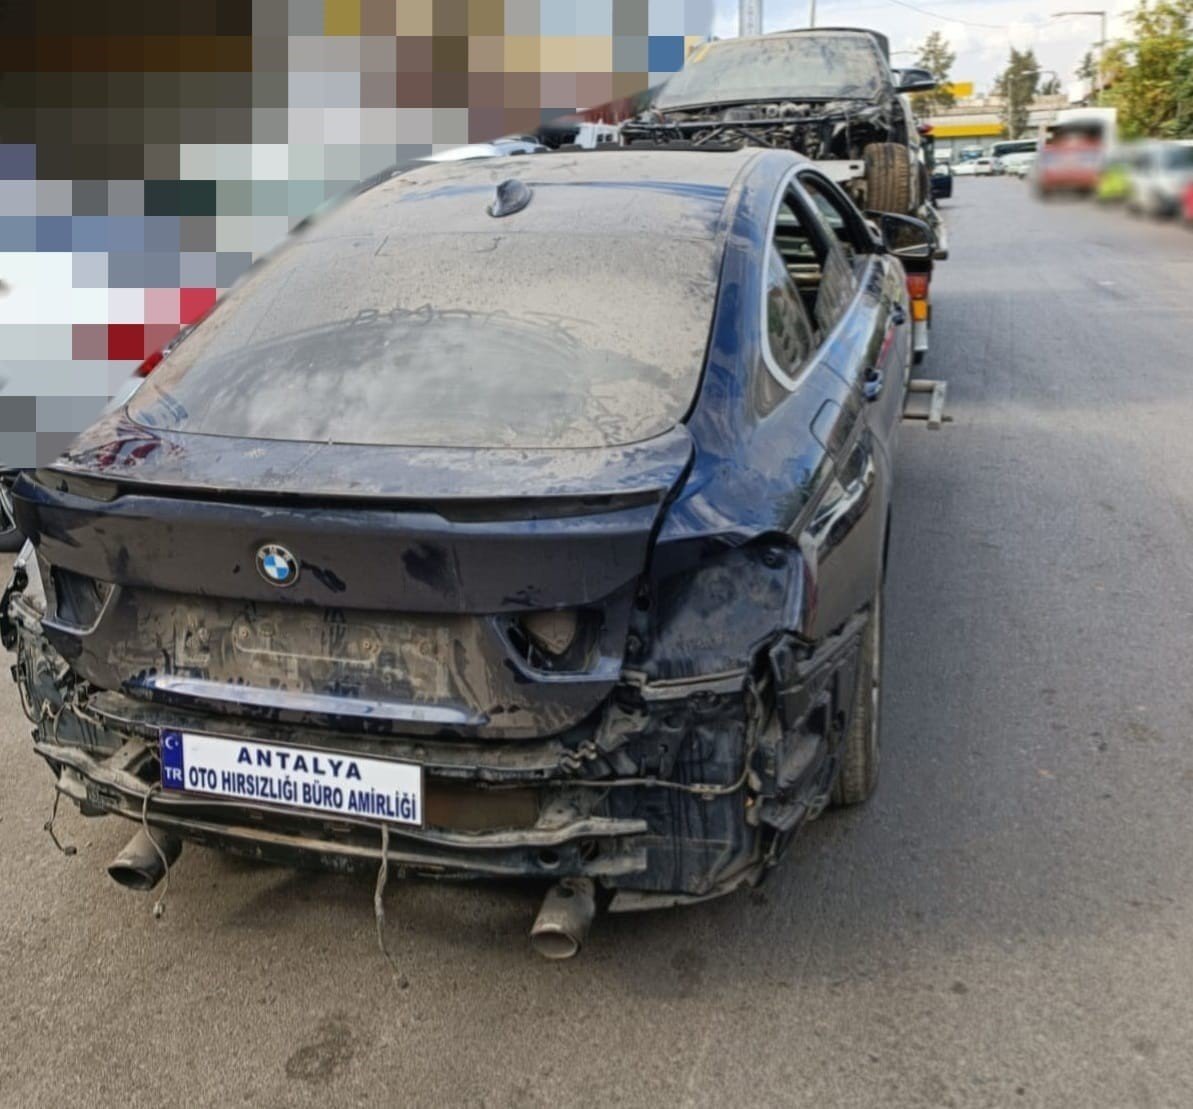 Antalya’da ‘change’ araç operasyonu: 7 adet tescil kaydı olmayan araç motoru ele geçirildi